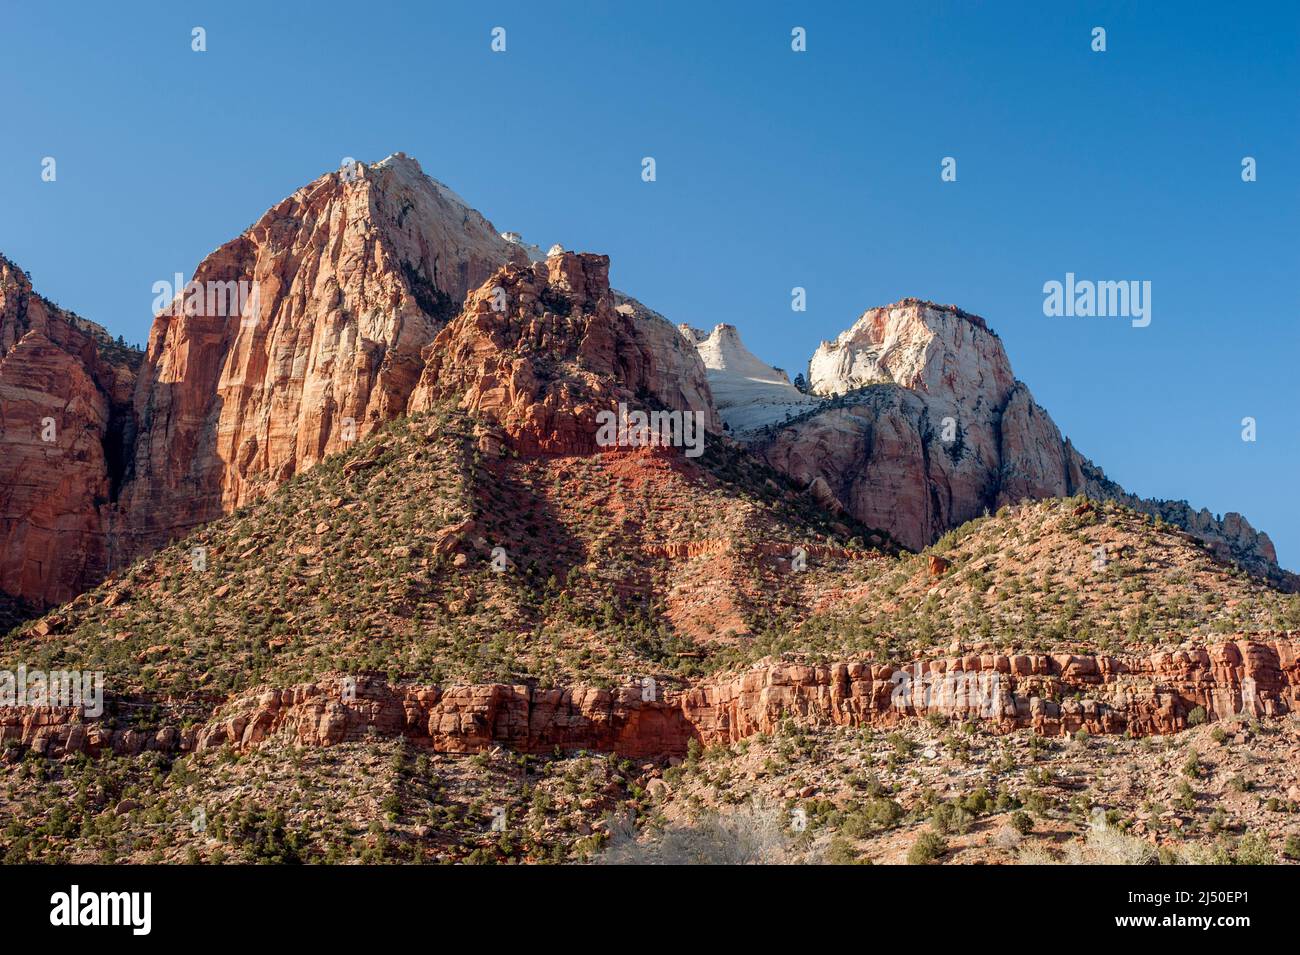 Acantilados sin nombre (centro) en el Parque Nacional Zion, Utah, y el Sentinel (derecha) Foto de stock